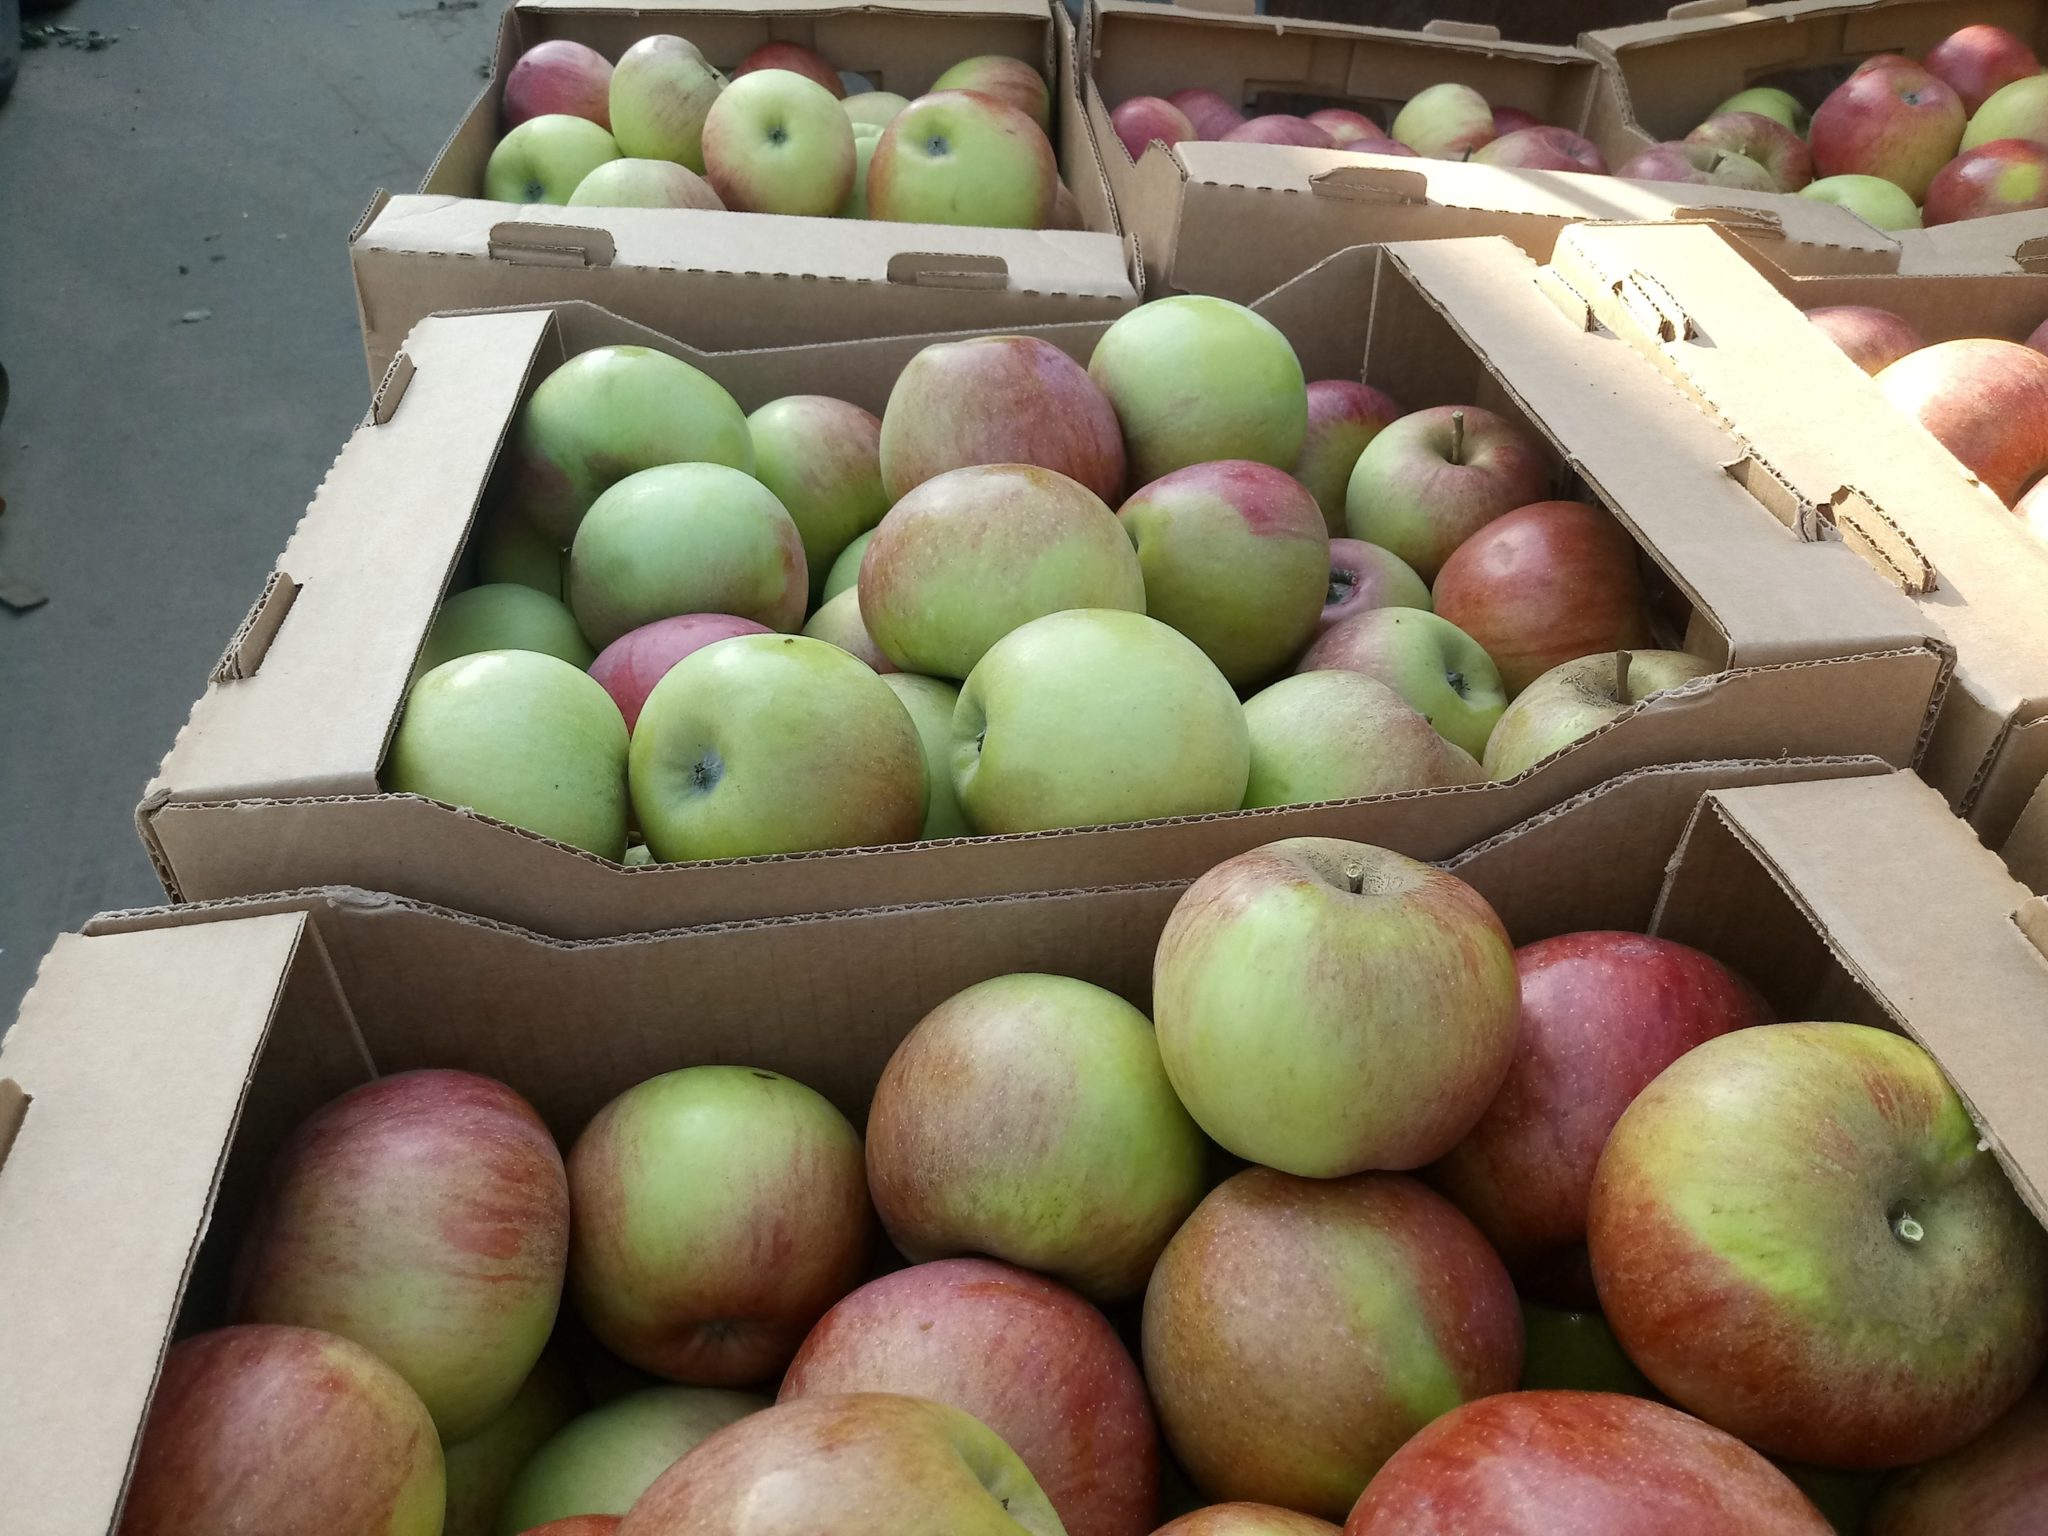 Купить яблоки от производителя. Яблоки сезонные. Яблоки эконом. Склад яблок. Яблоки производитель.